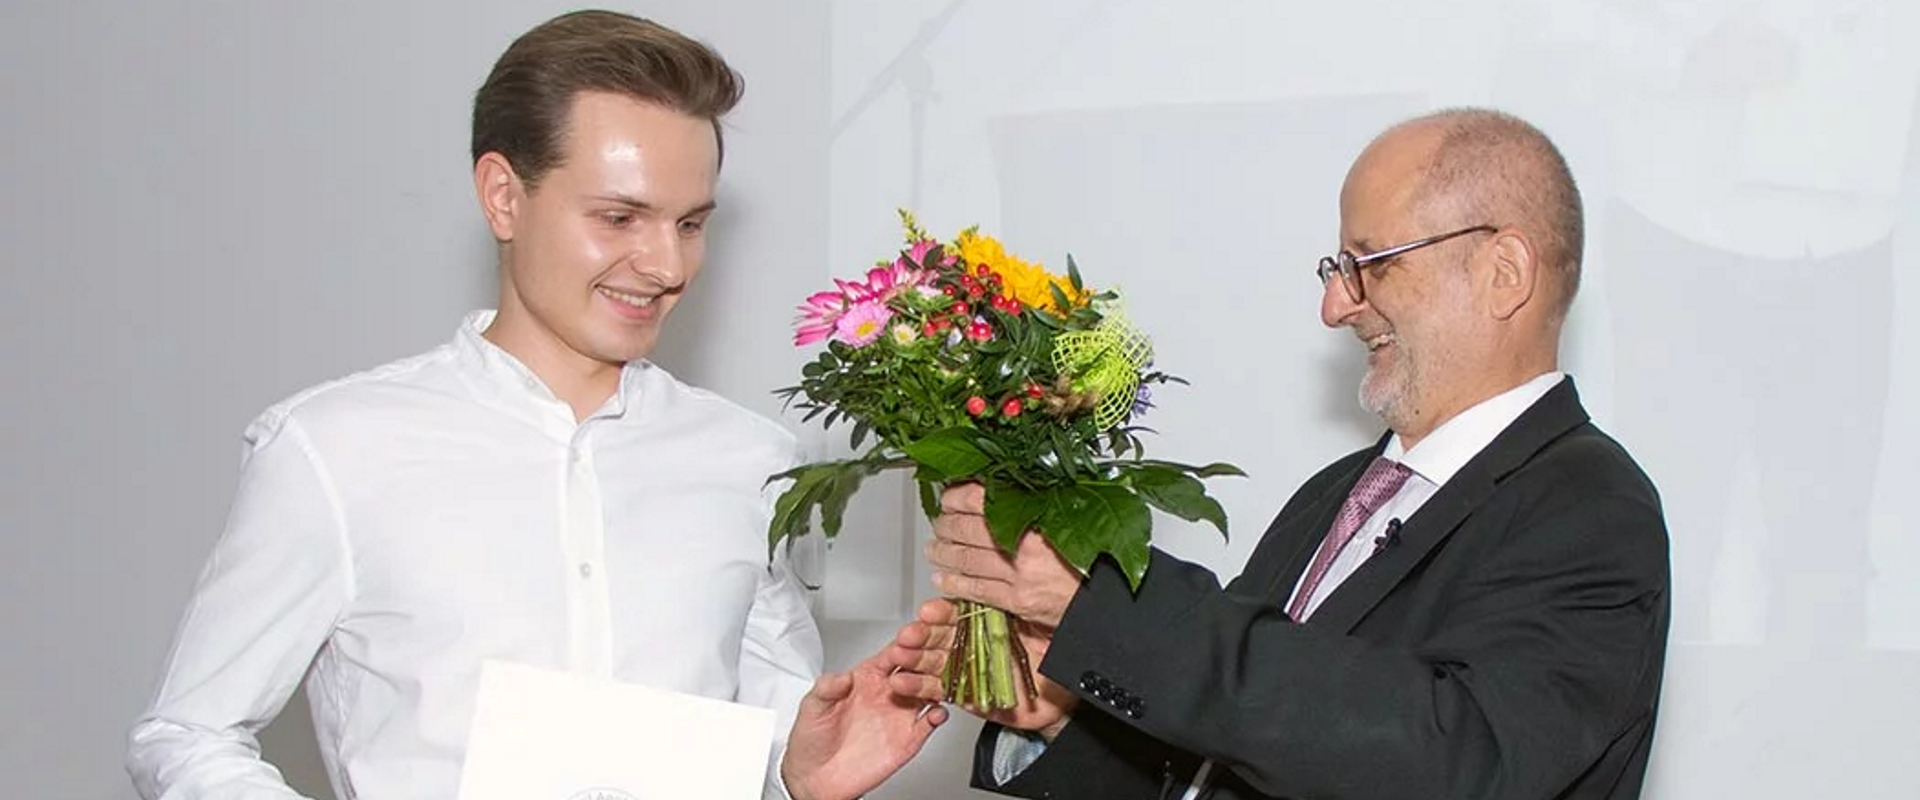 Neue Studierende in Berlin, Köln und Frankfurt feierlich begrüßt